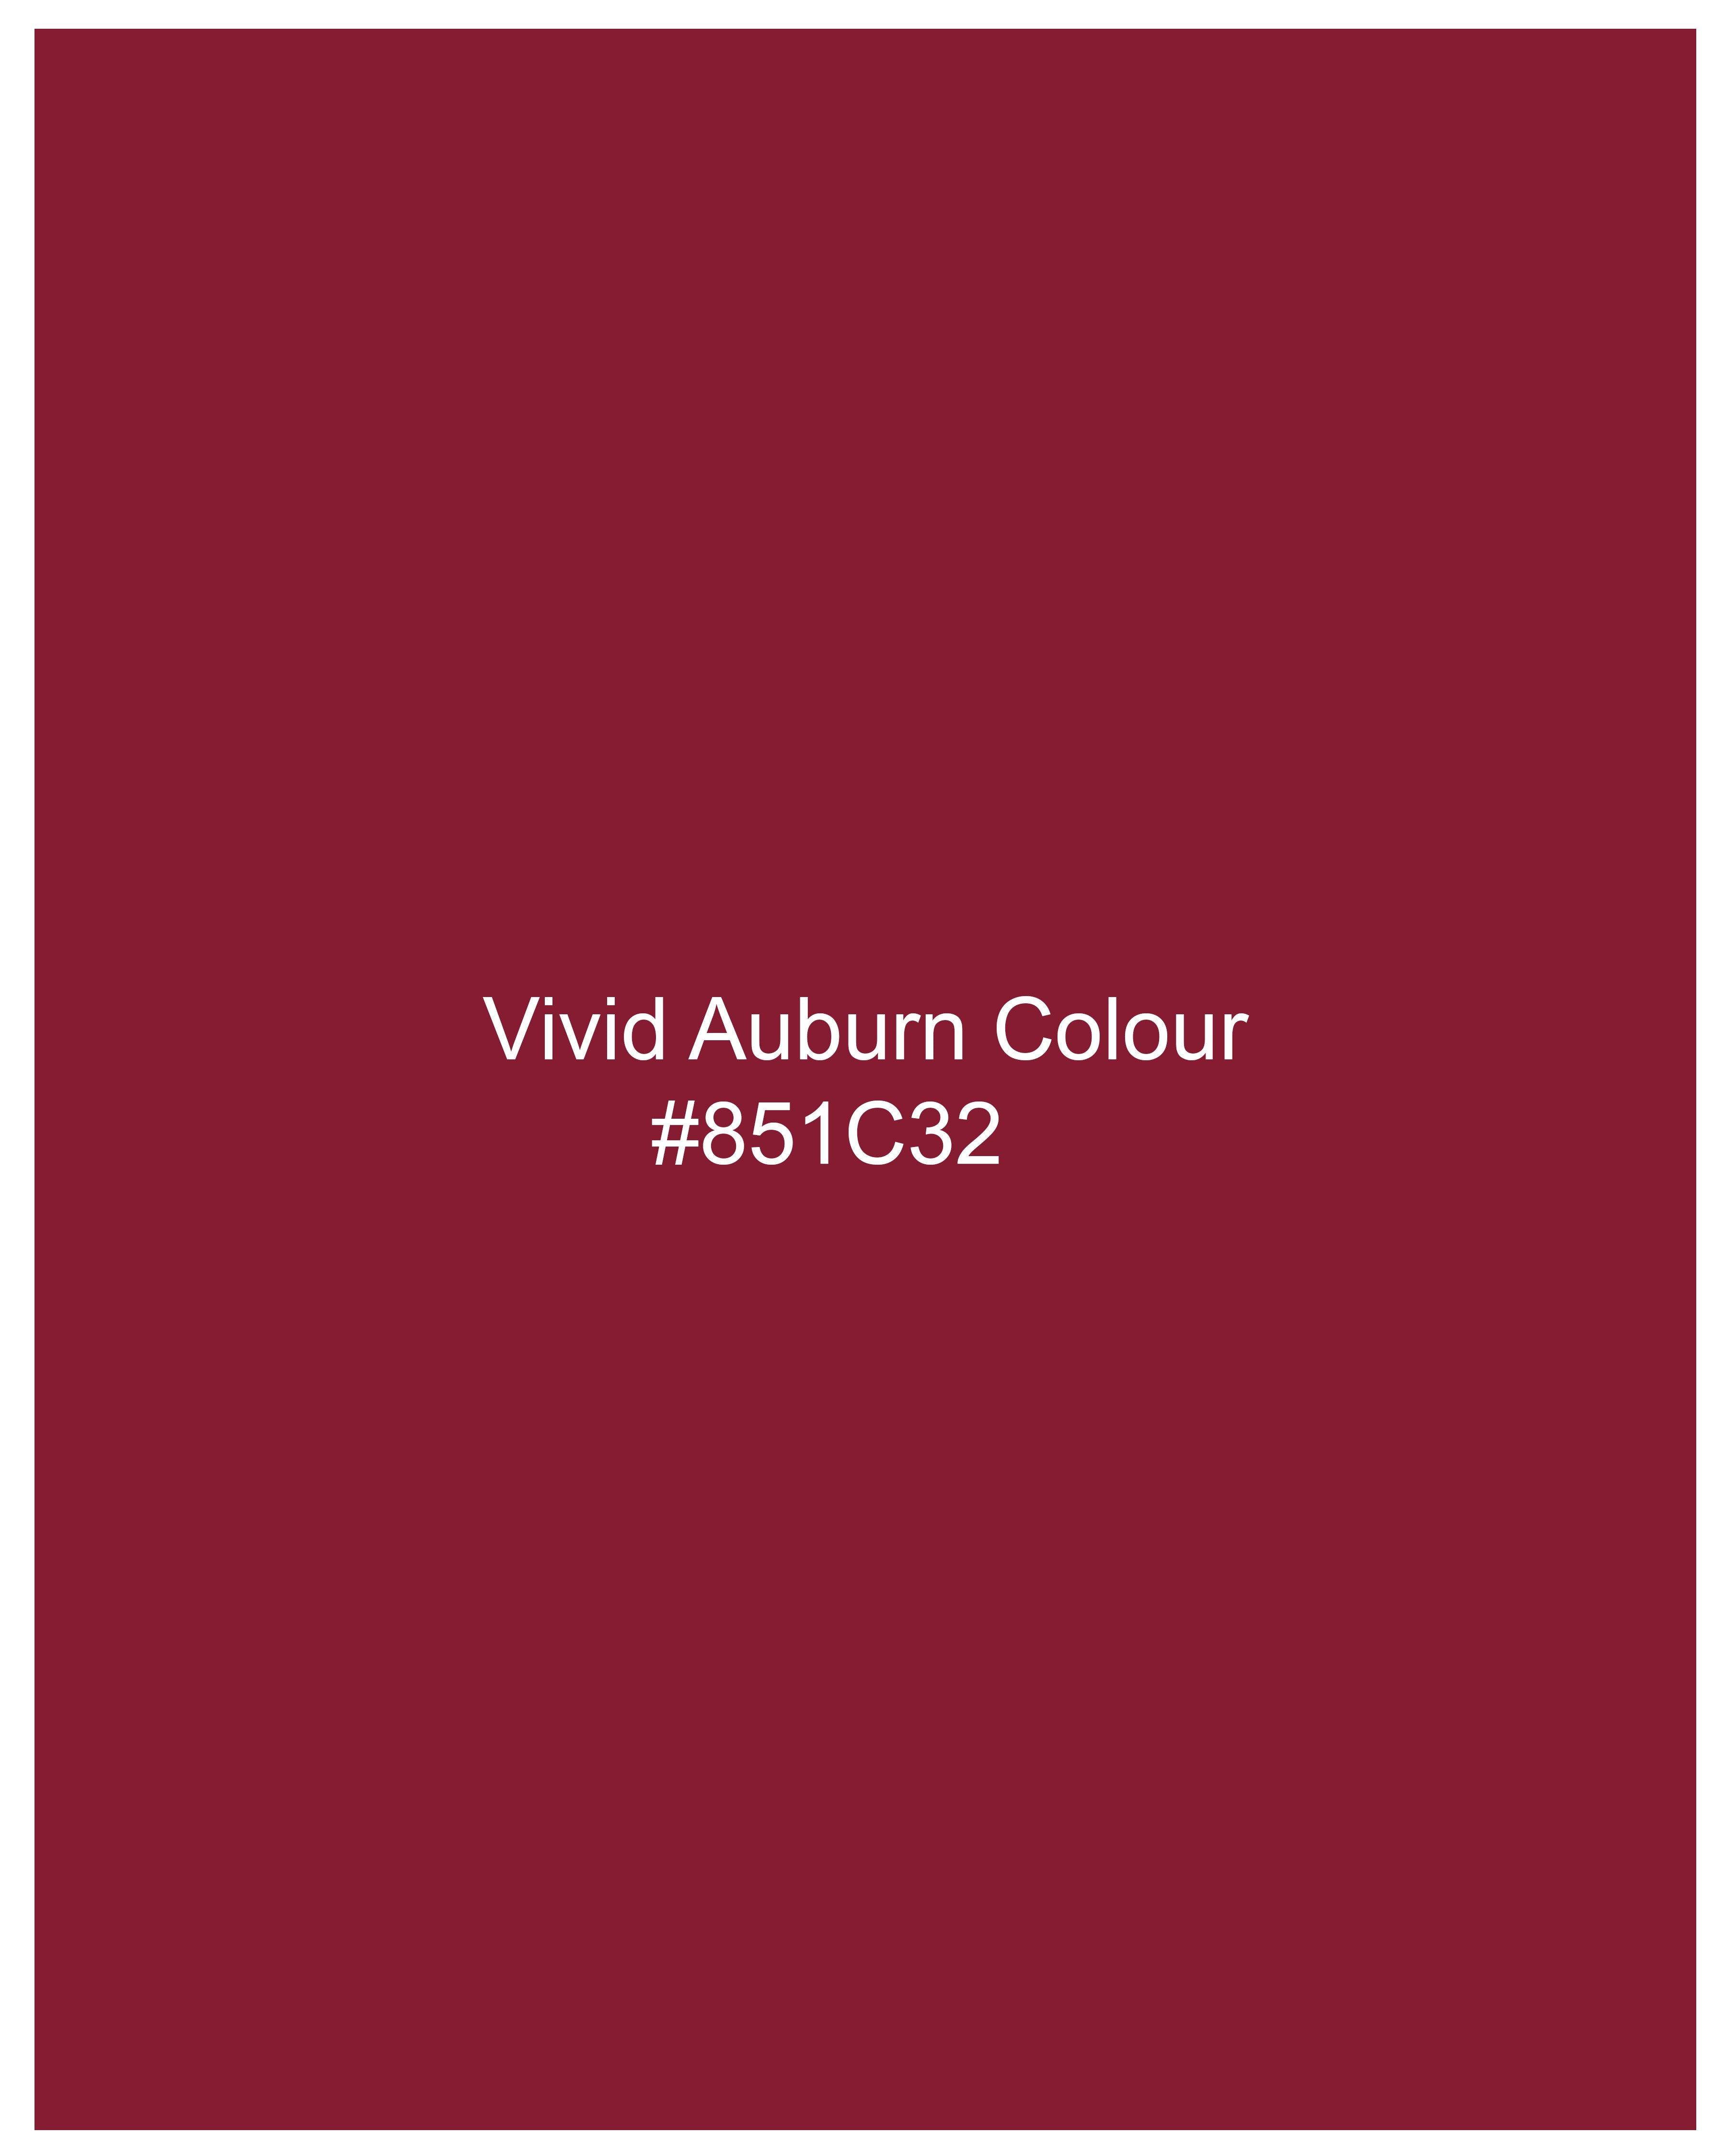 Vivid Auburn Red Subtle Sheen Super Soft Premium Cotton Shirt 8869-BLK-38, 8869-BLK-H-38, 8869-BLK-39, 8869-BLK-H-39, 8869-BLK-40, 8869-BLK-H-40, 8869-BLK-42, 8869-BLK-H-42, 8869-BLK-44, 8869-BLK-H-44, 8869-BLK-46, 8869-BLK-H-46, 8869-BLK-48, 8869-BLK-H-48, 8869-BLK-50, 8869-BLK-H-50, 8869-BLK-52, 8869-BLK-H-52